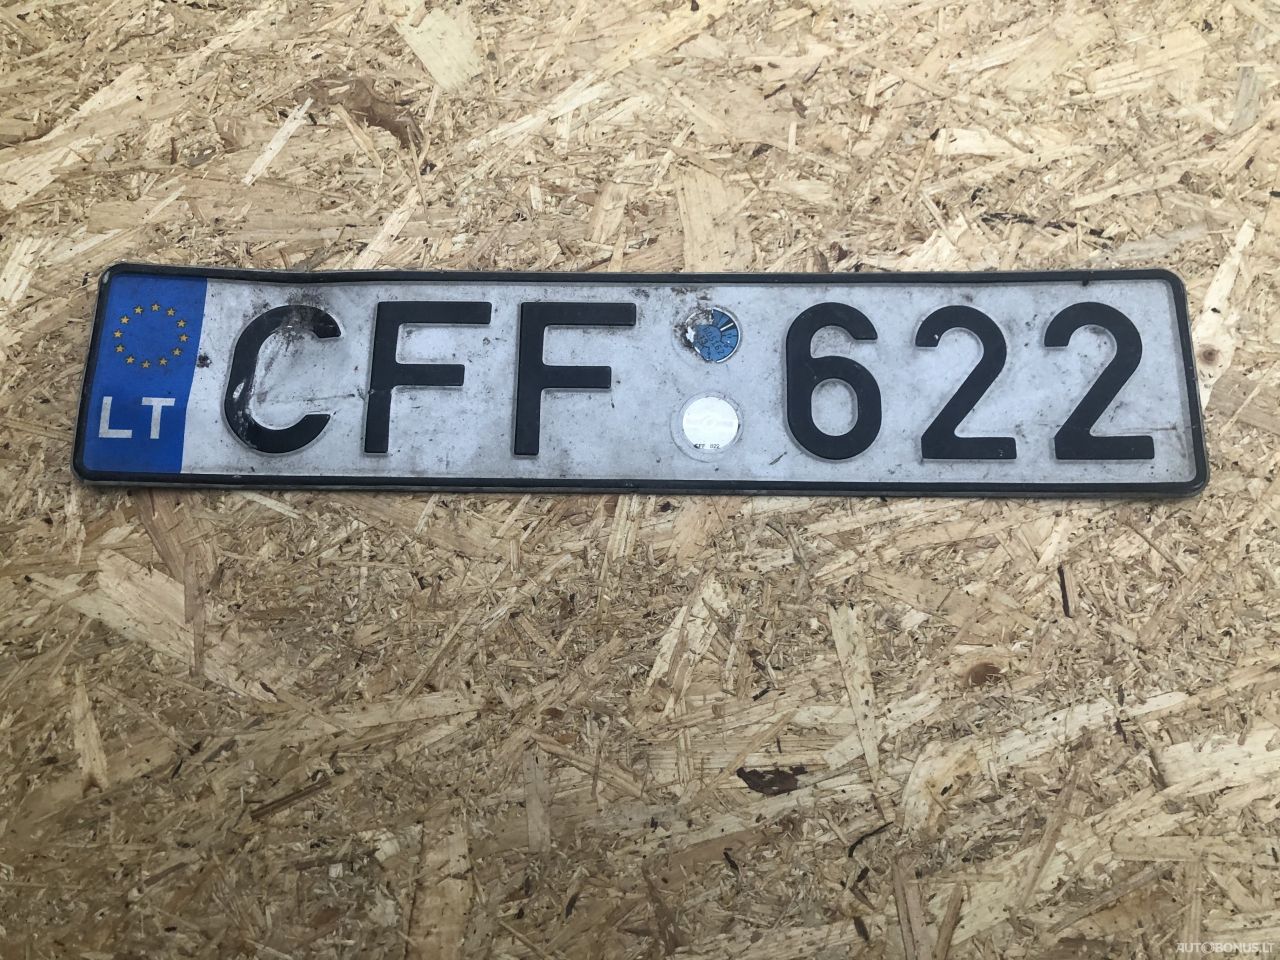  CFF622